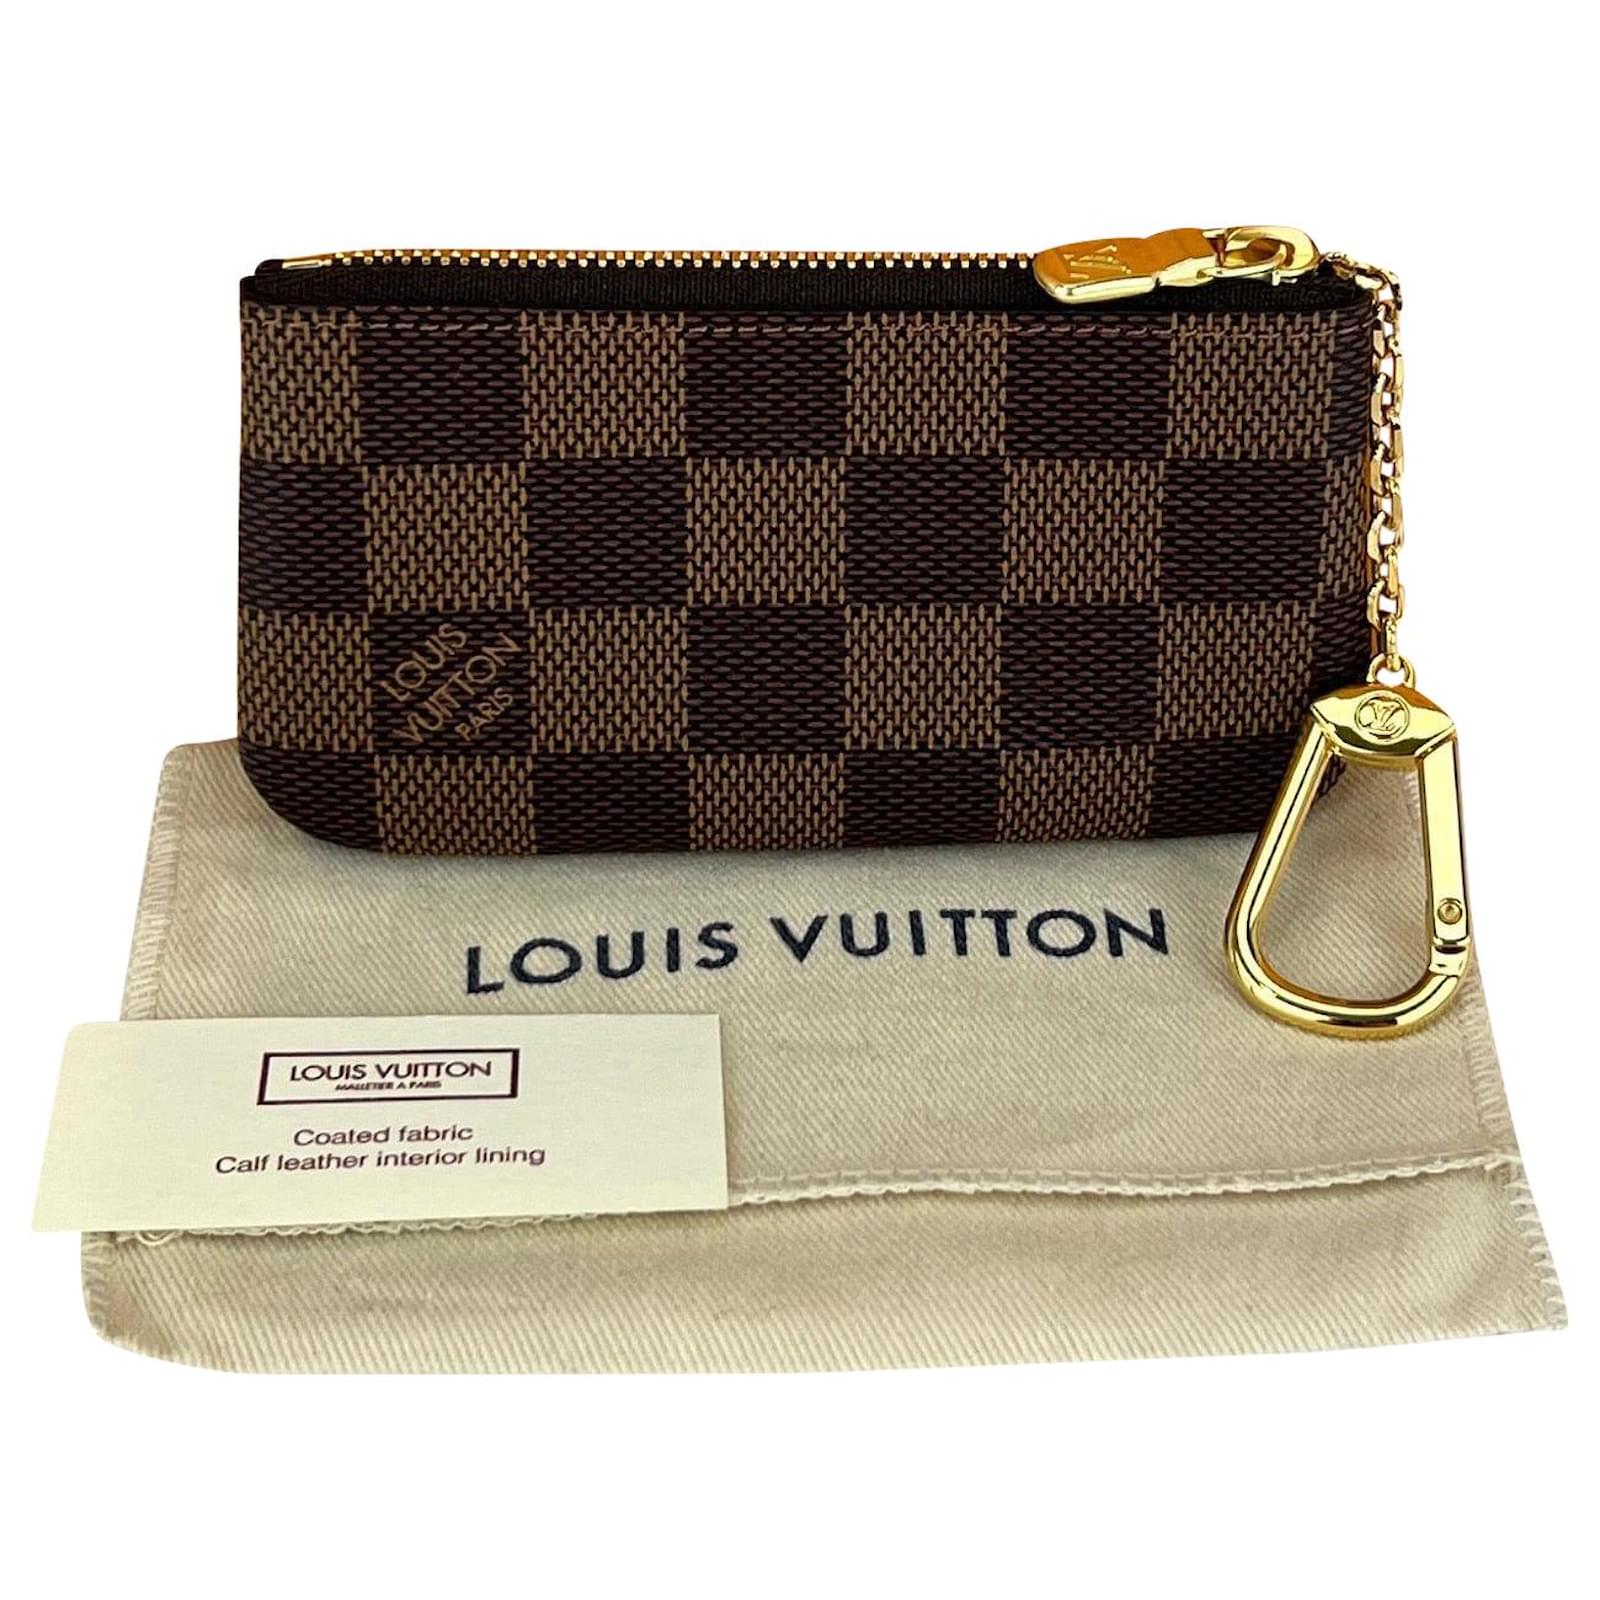 Shop Louis Vuitton DAMIER Key pouch (N62658) by Sincerity_m639